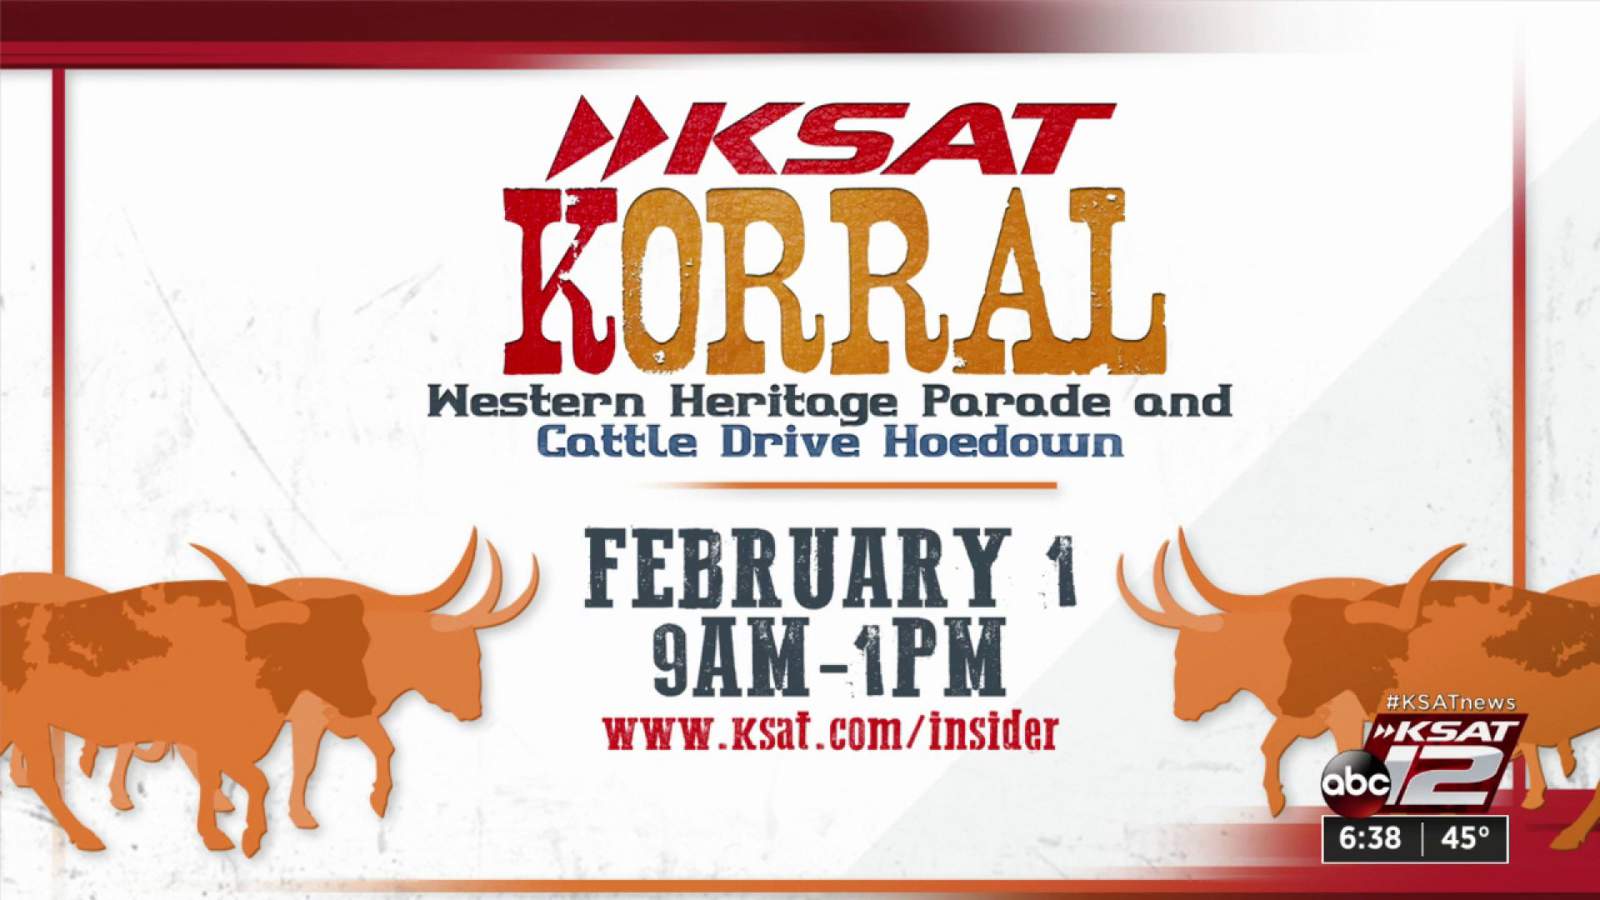 KSAT Korral - Western Heritage Parade and Cattle Drive Hoedown | KSAT12